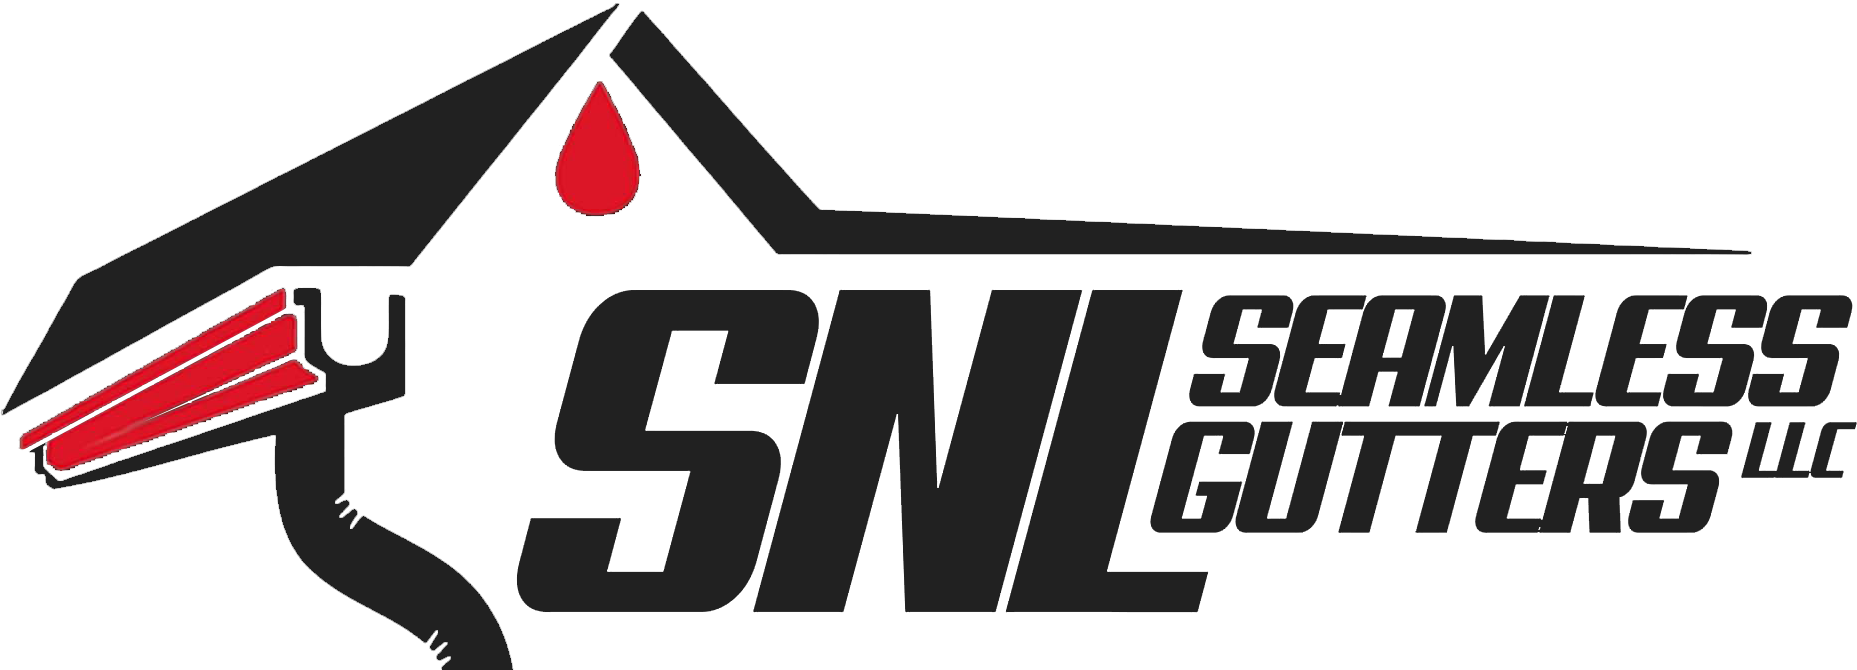 SNL Seamless Gutters local gutter installer for myrtle beach South Carolina logo footer